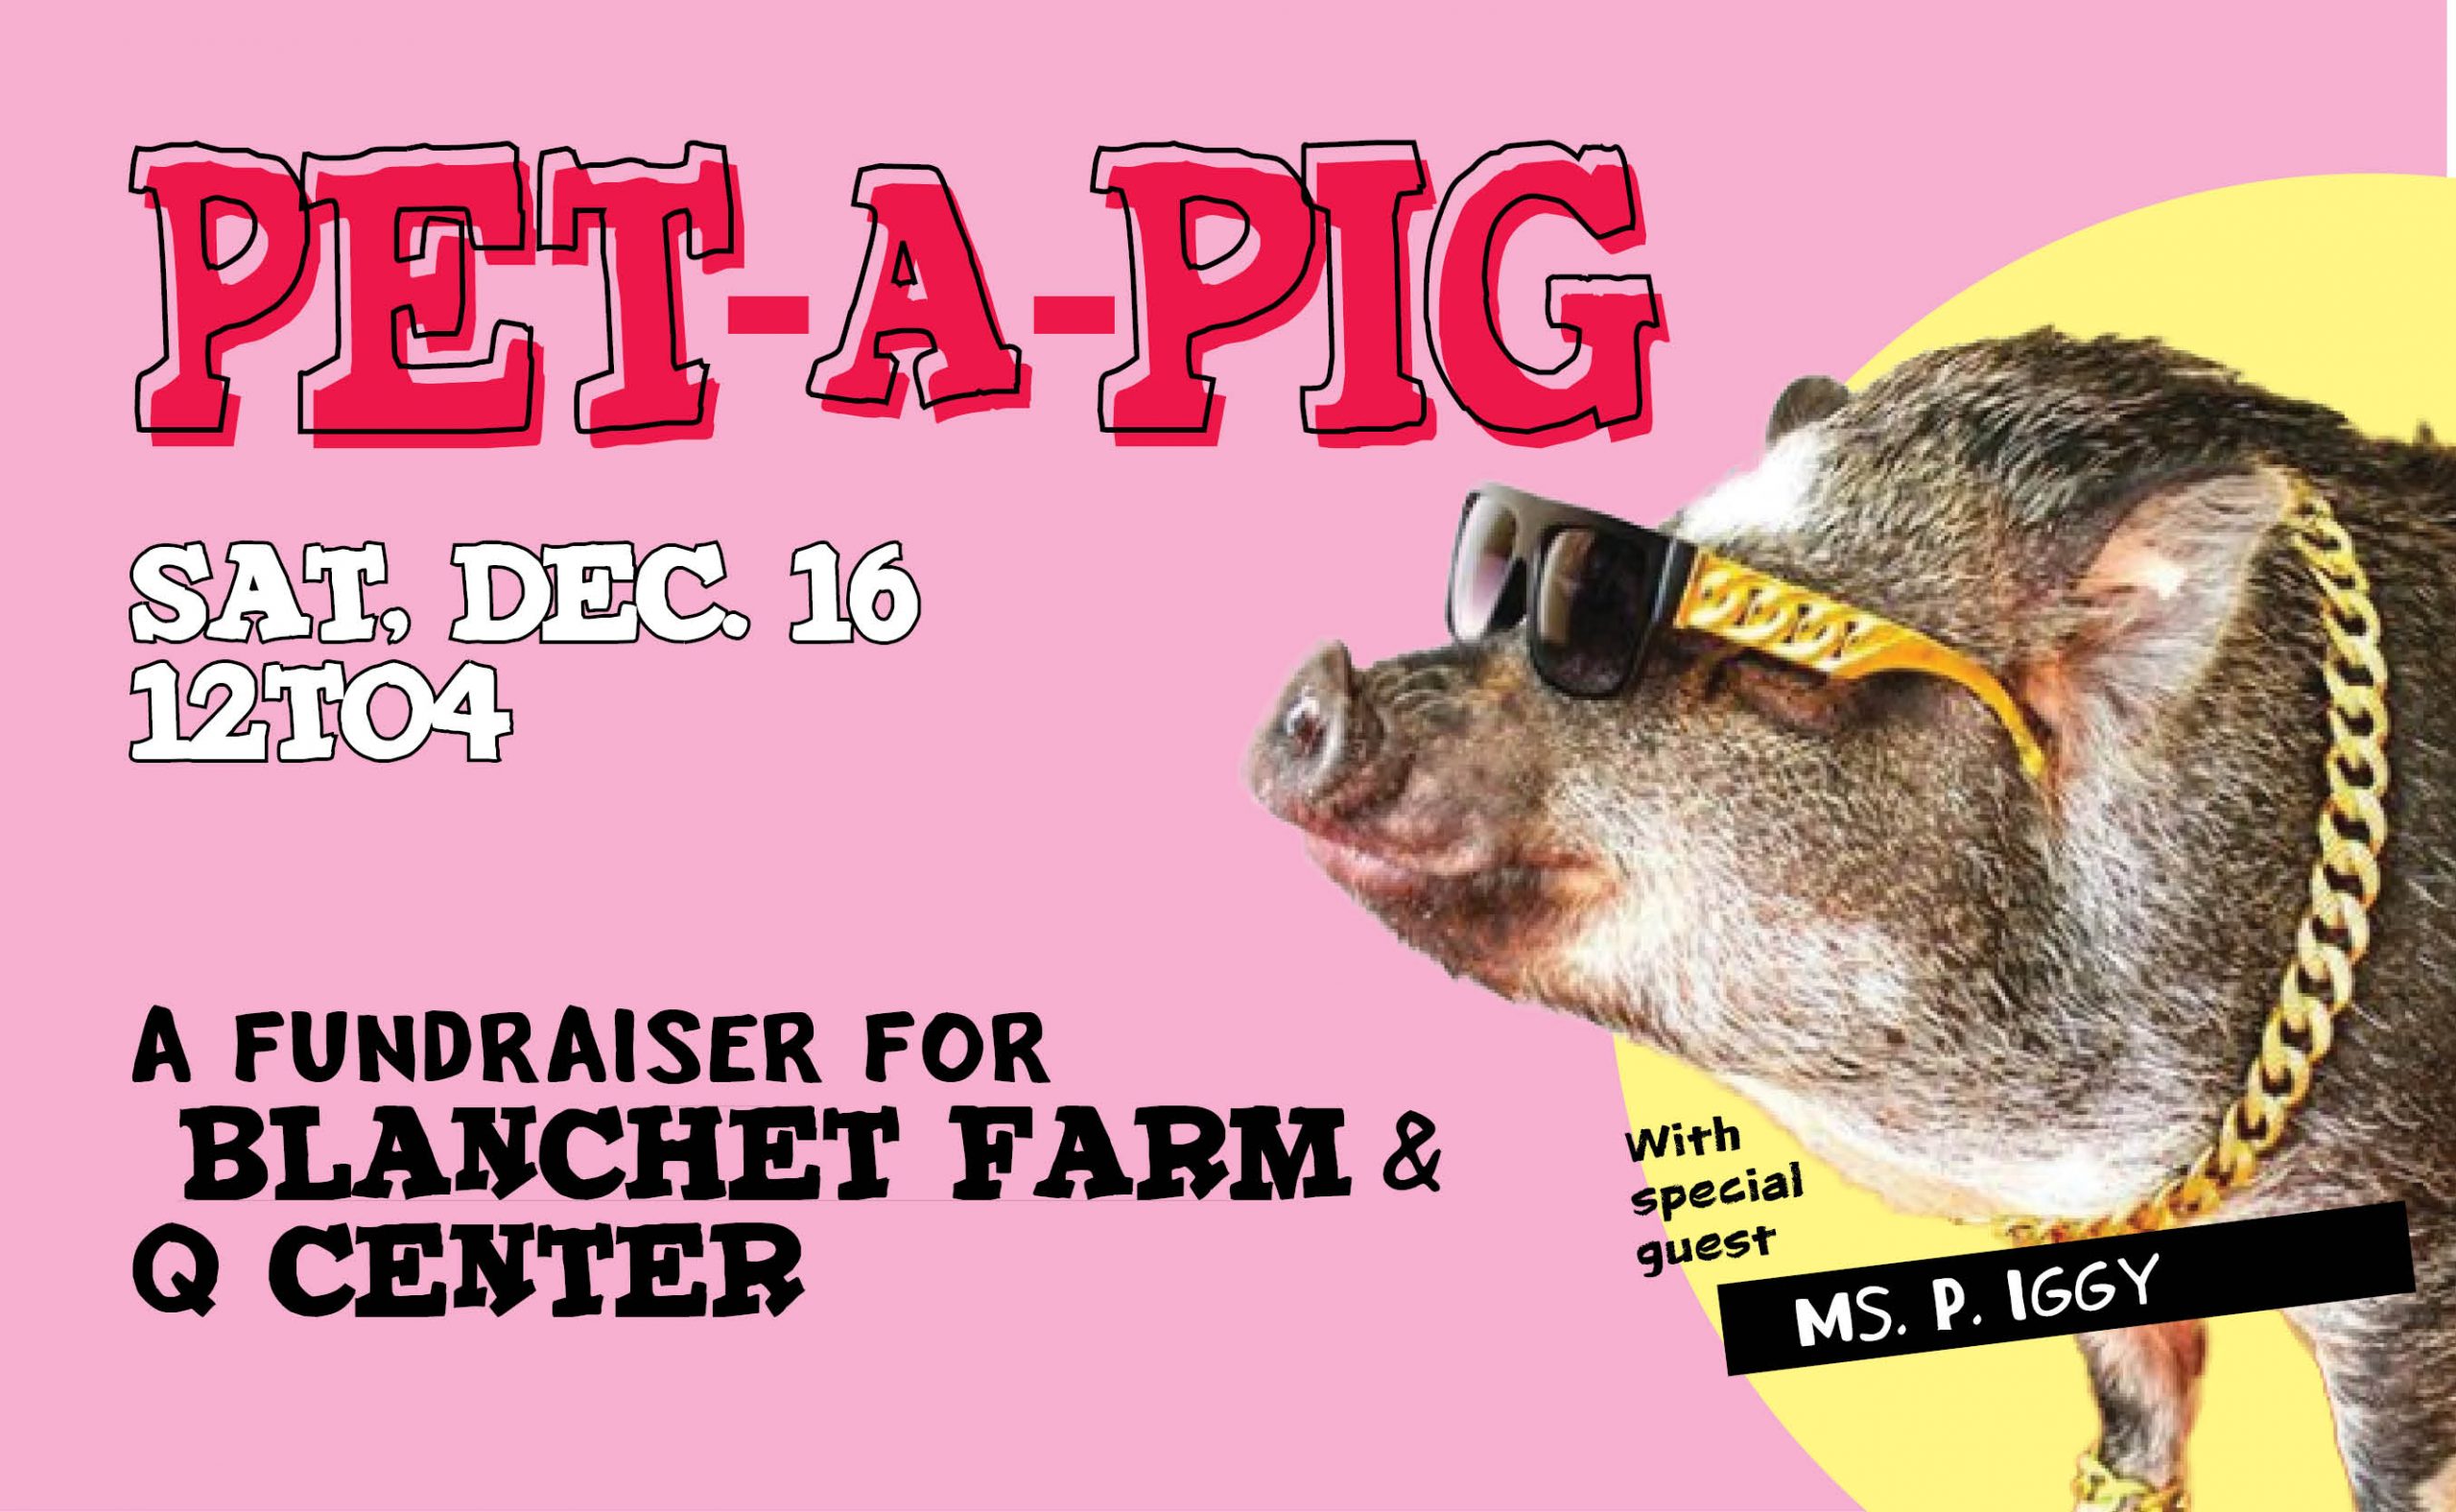 Pet-A-Pig Fundraiser